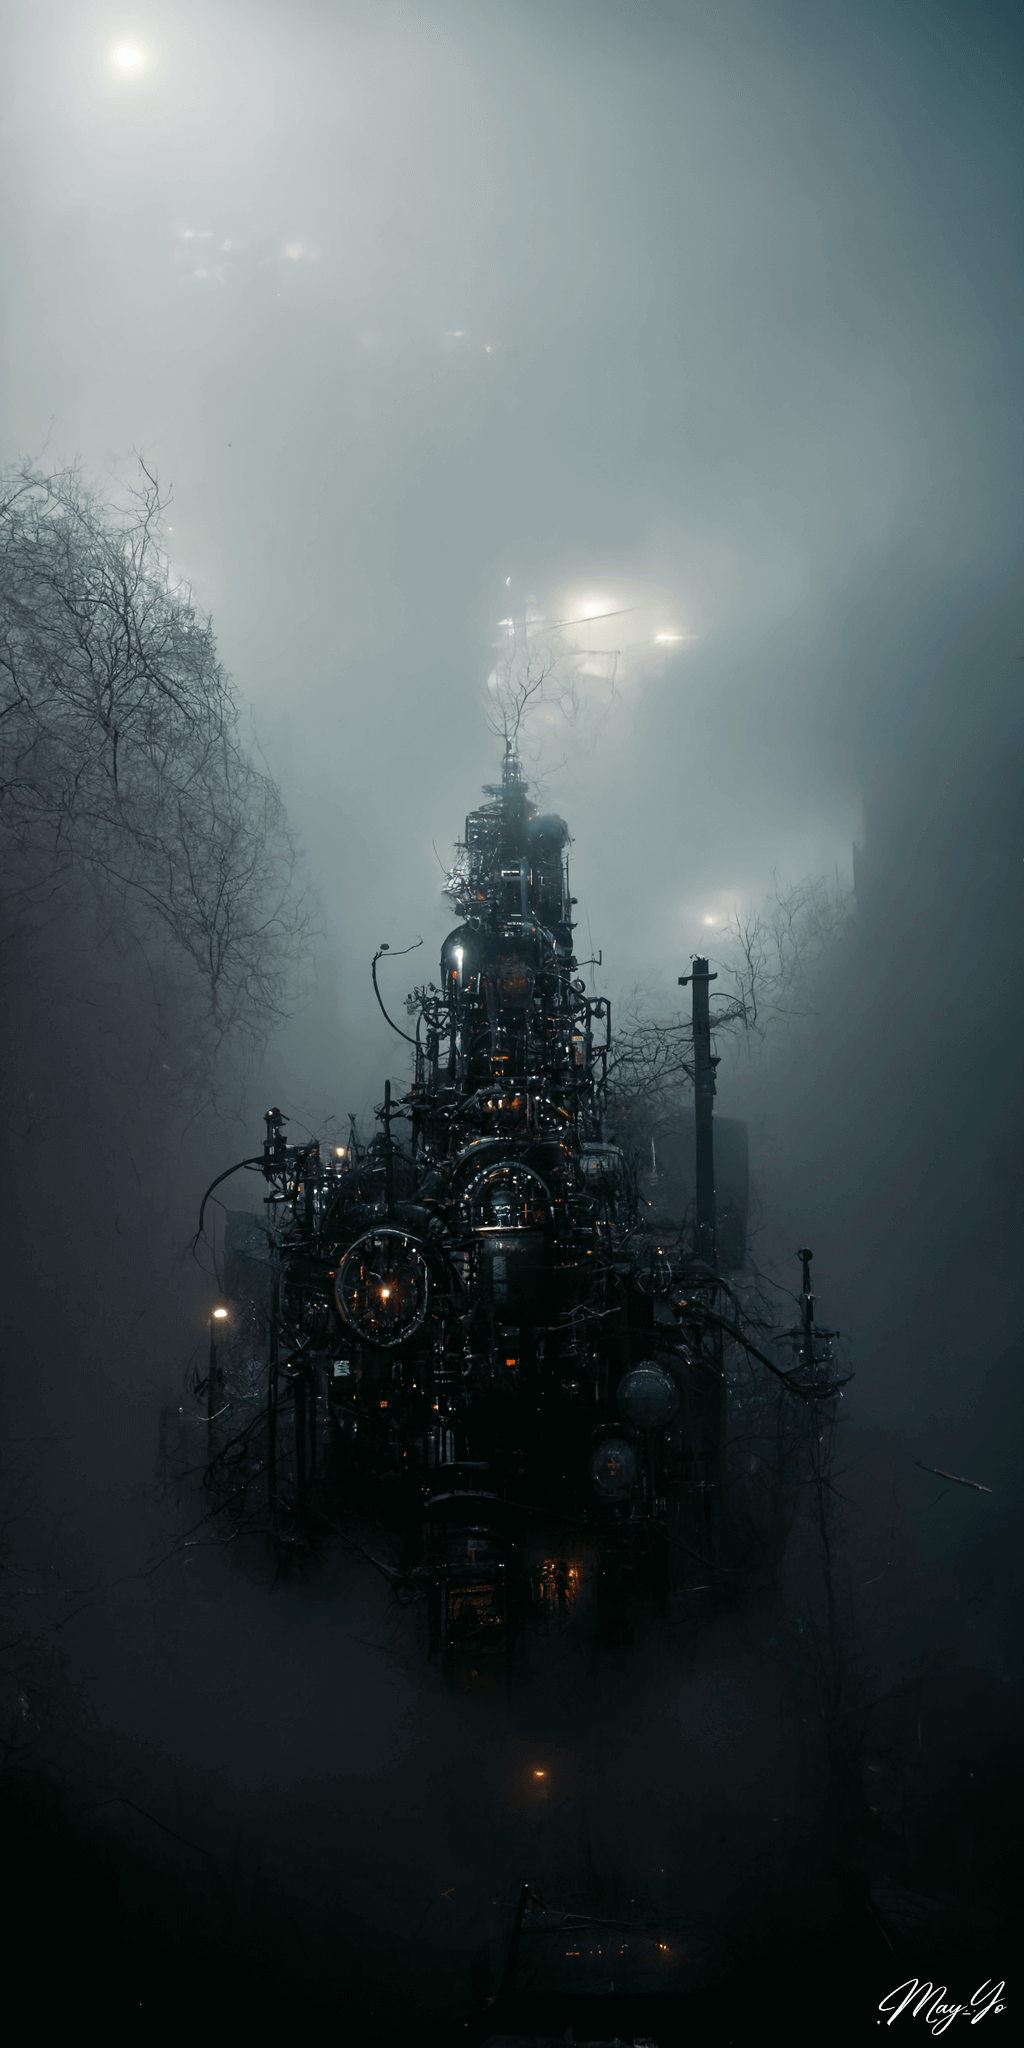 ディストピアな霧の森に現れる異世界のお城の壁紙イラスト ダークな要塞･工場の待受 AIイラスト待受 縦長画像 cyberpunk castle illustration dark forest fog